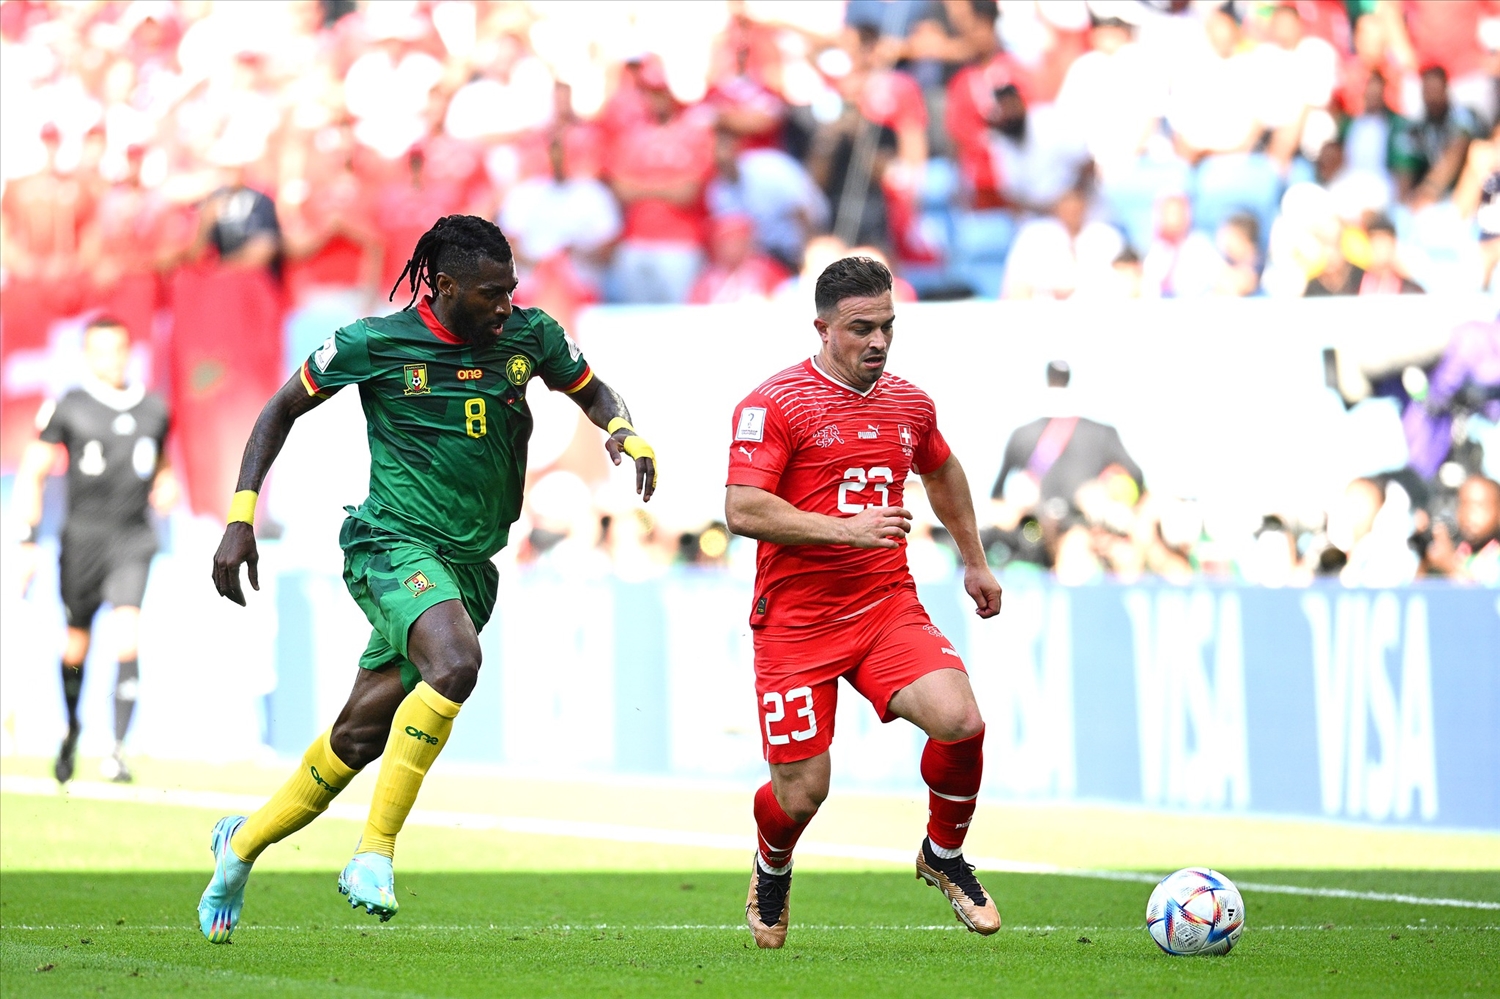 Thụy Sỹ vượt qua Cameroon với tỉ số 1 - 0 (FIFA)